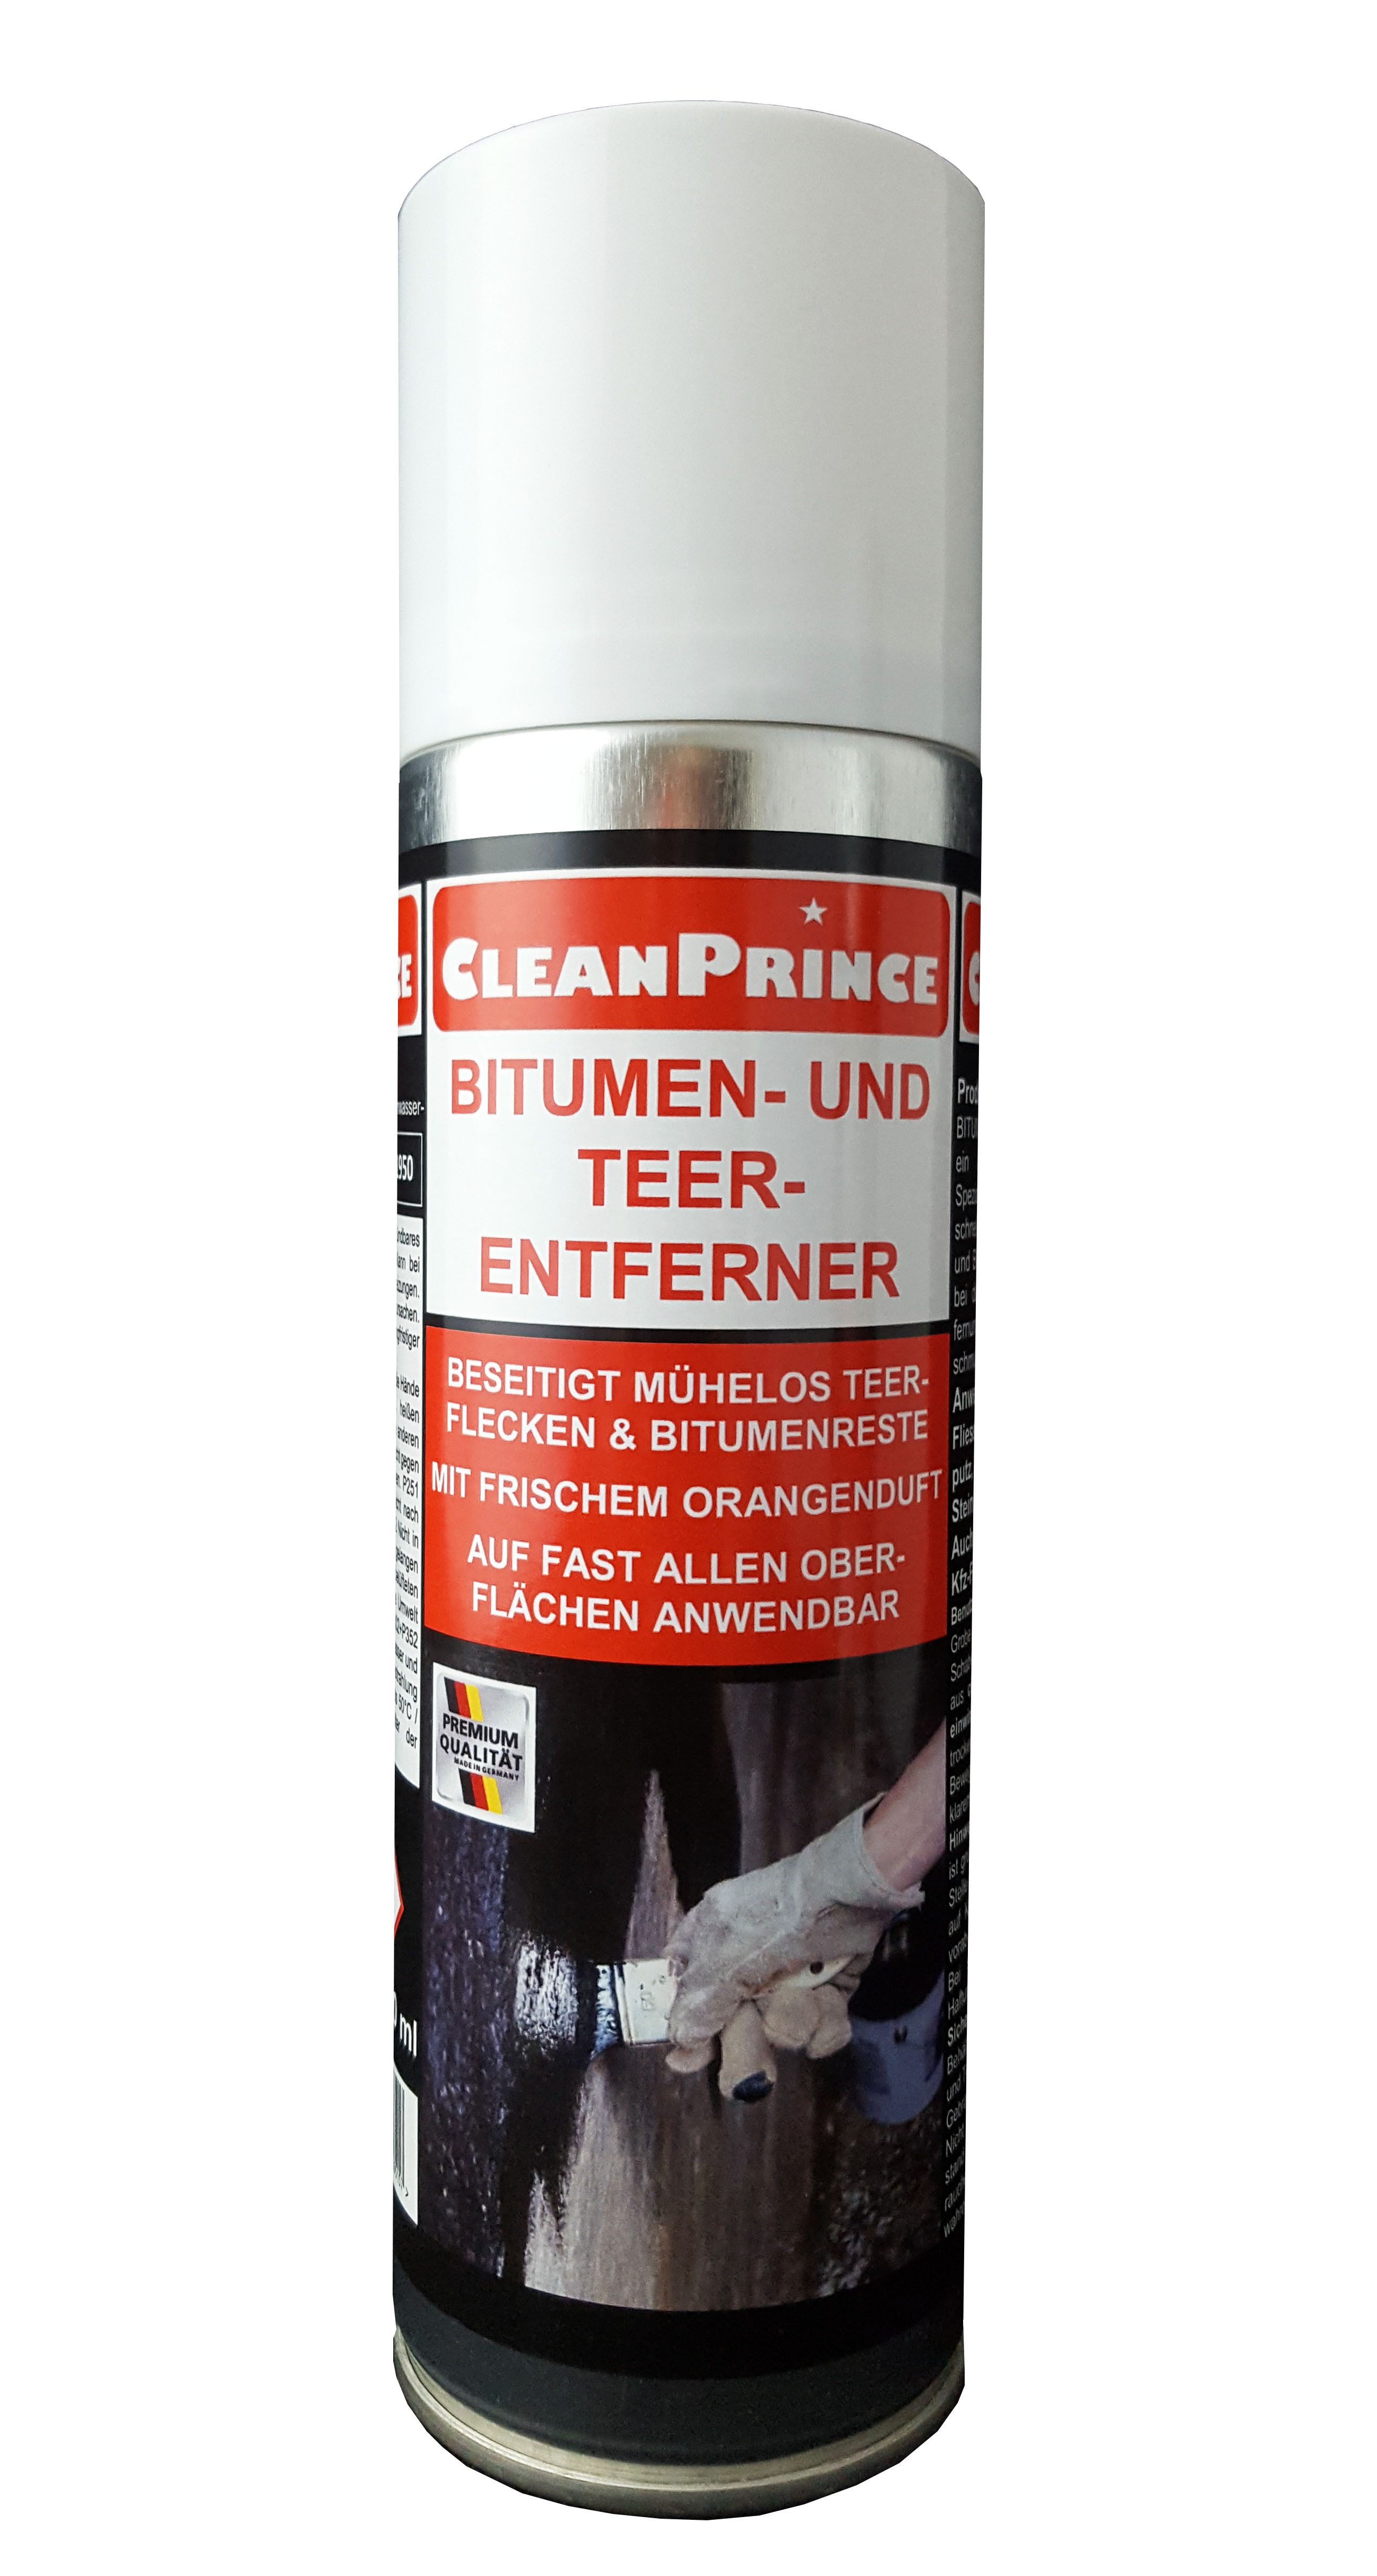 CleanPrince Spachtelmasse Bitumen- und Teer Reste - Entferner, Beseitigung von Teerspritzern und Bitumenresten